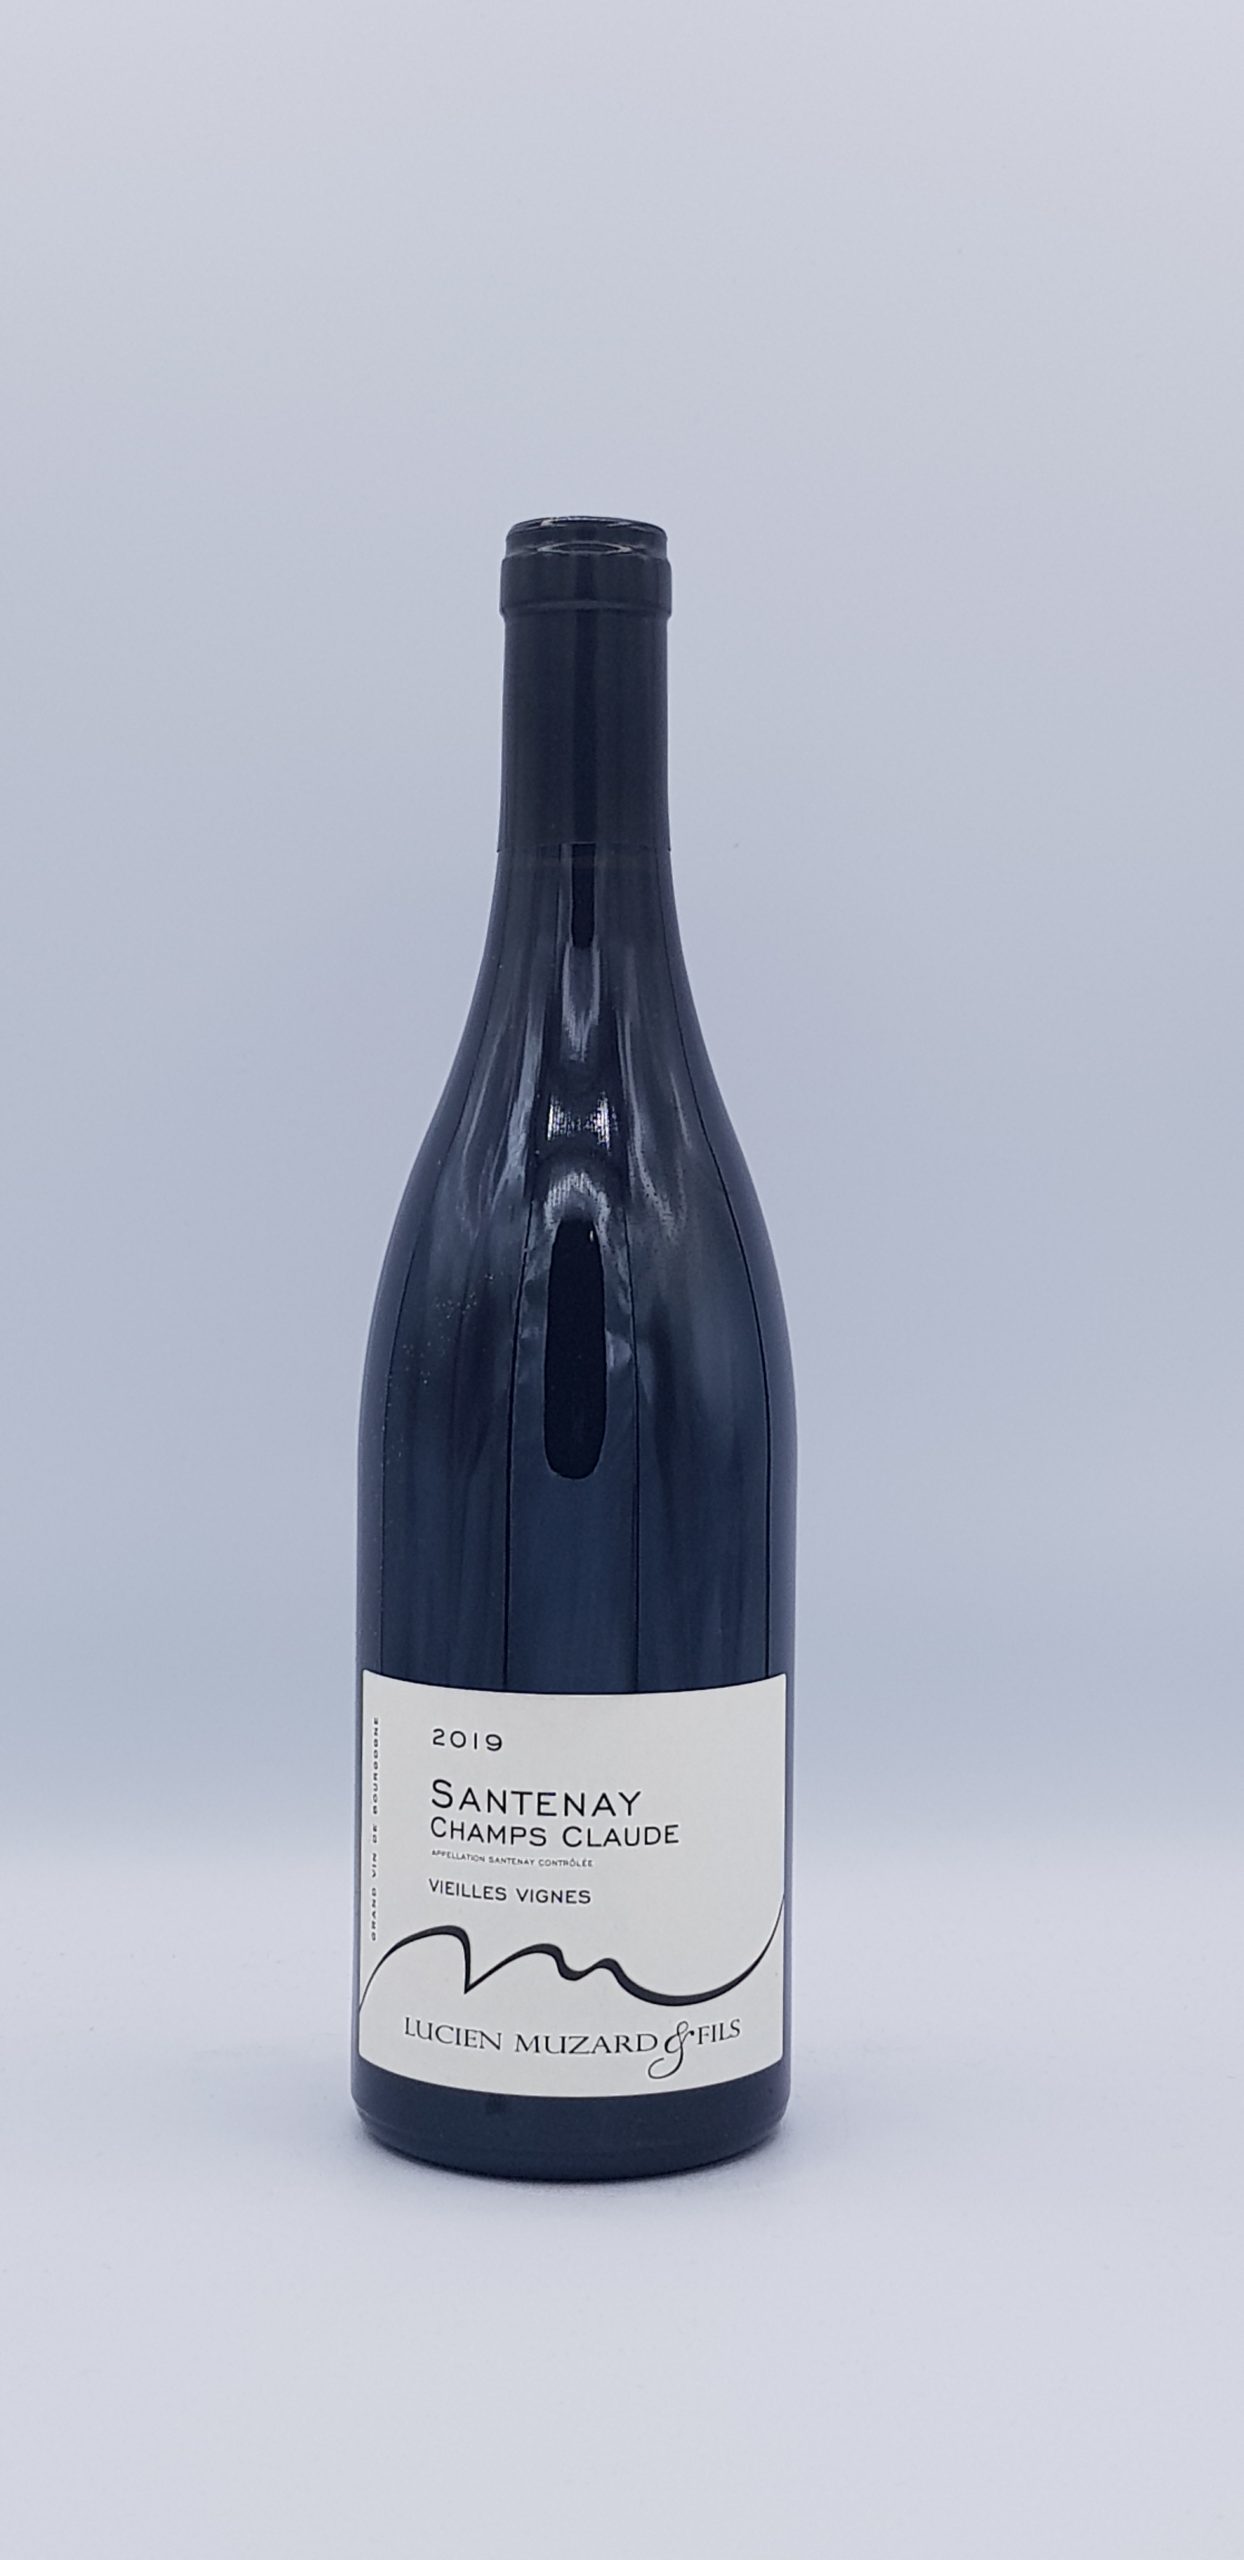 Santenay “Champs Claude” Vieilles Vignes 2019 Blanc